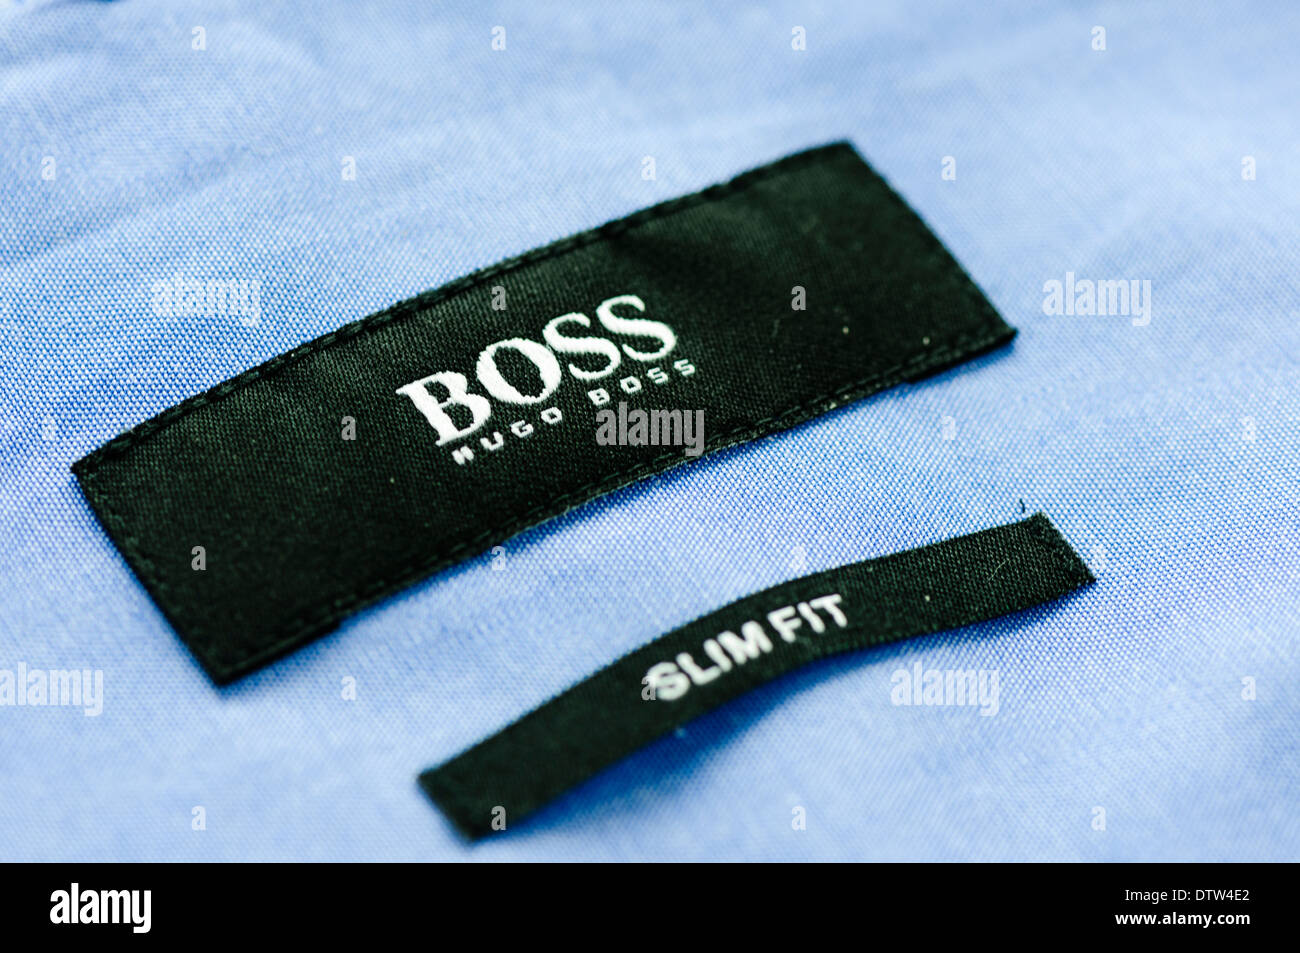 Label on a Hugo Boss men's shirt Stock 